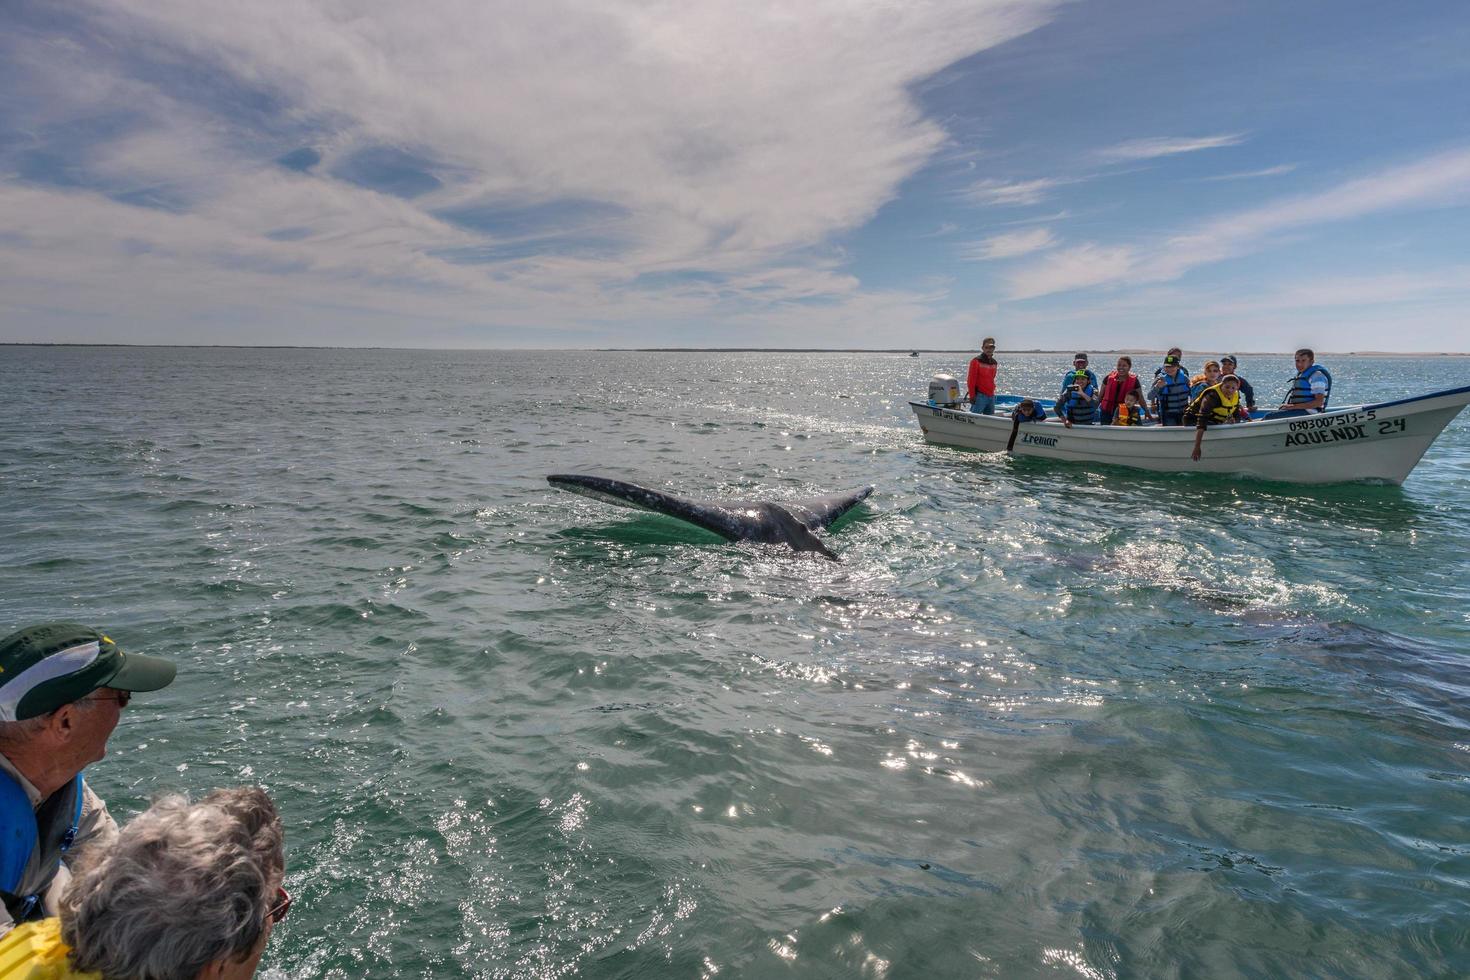 alfredo lopez mateos - mexique - 5 février 2015 - baleine grise s'approchant d'un bateau photo